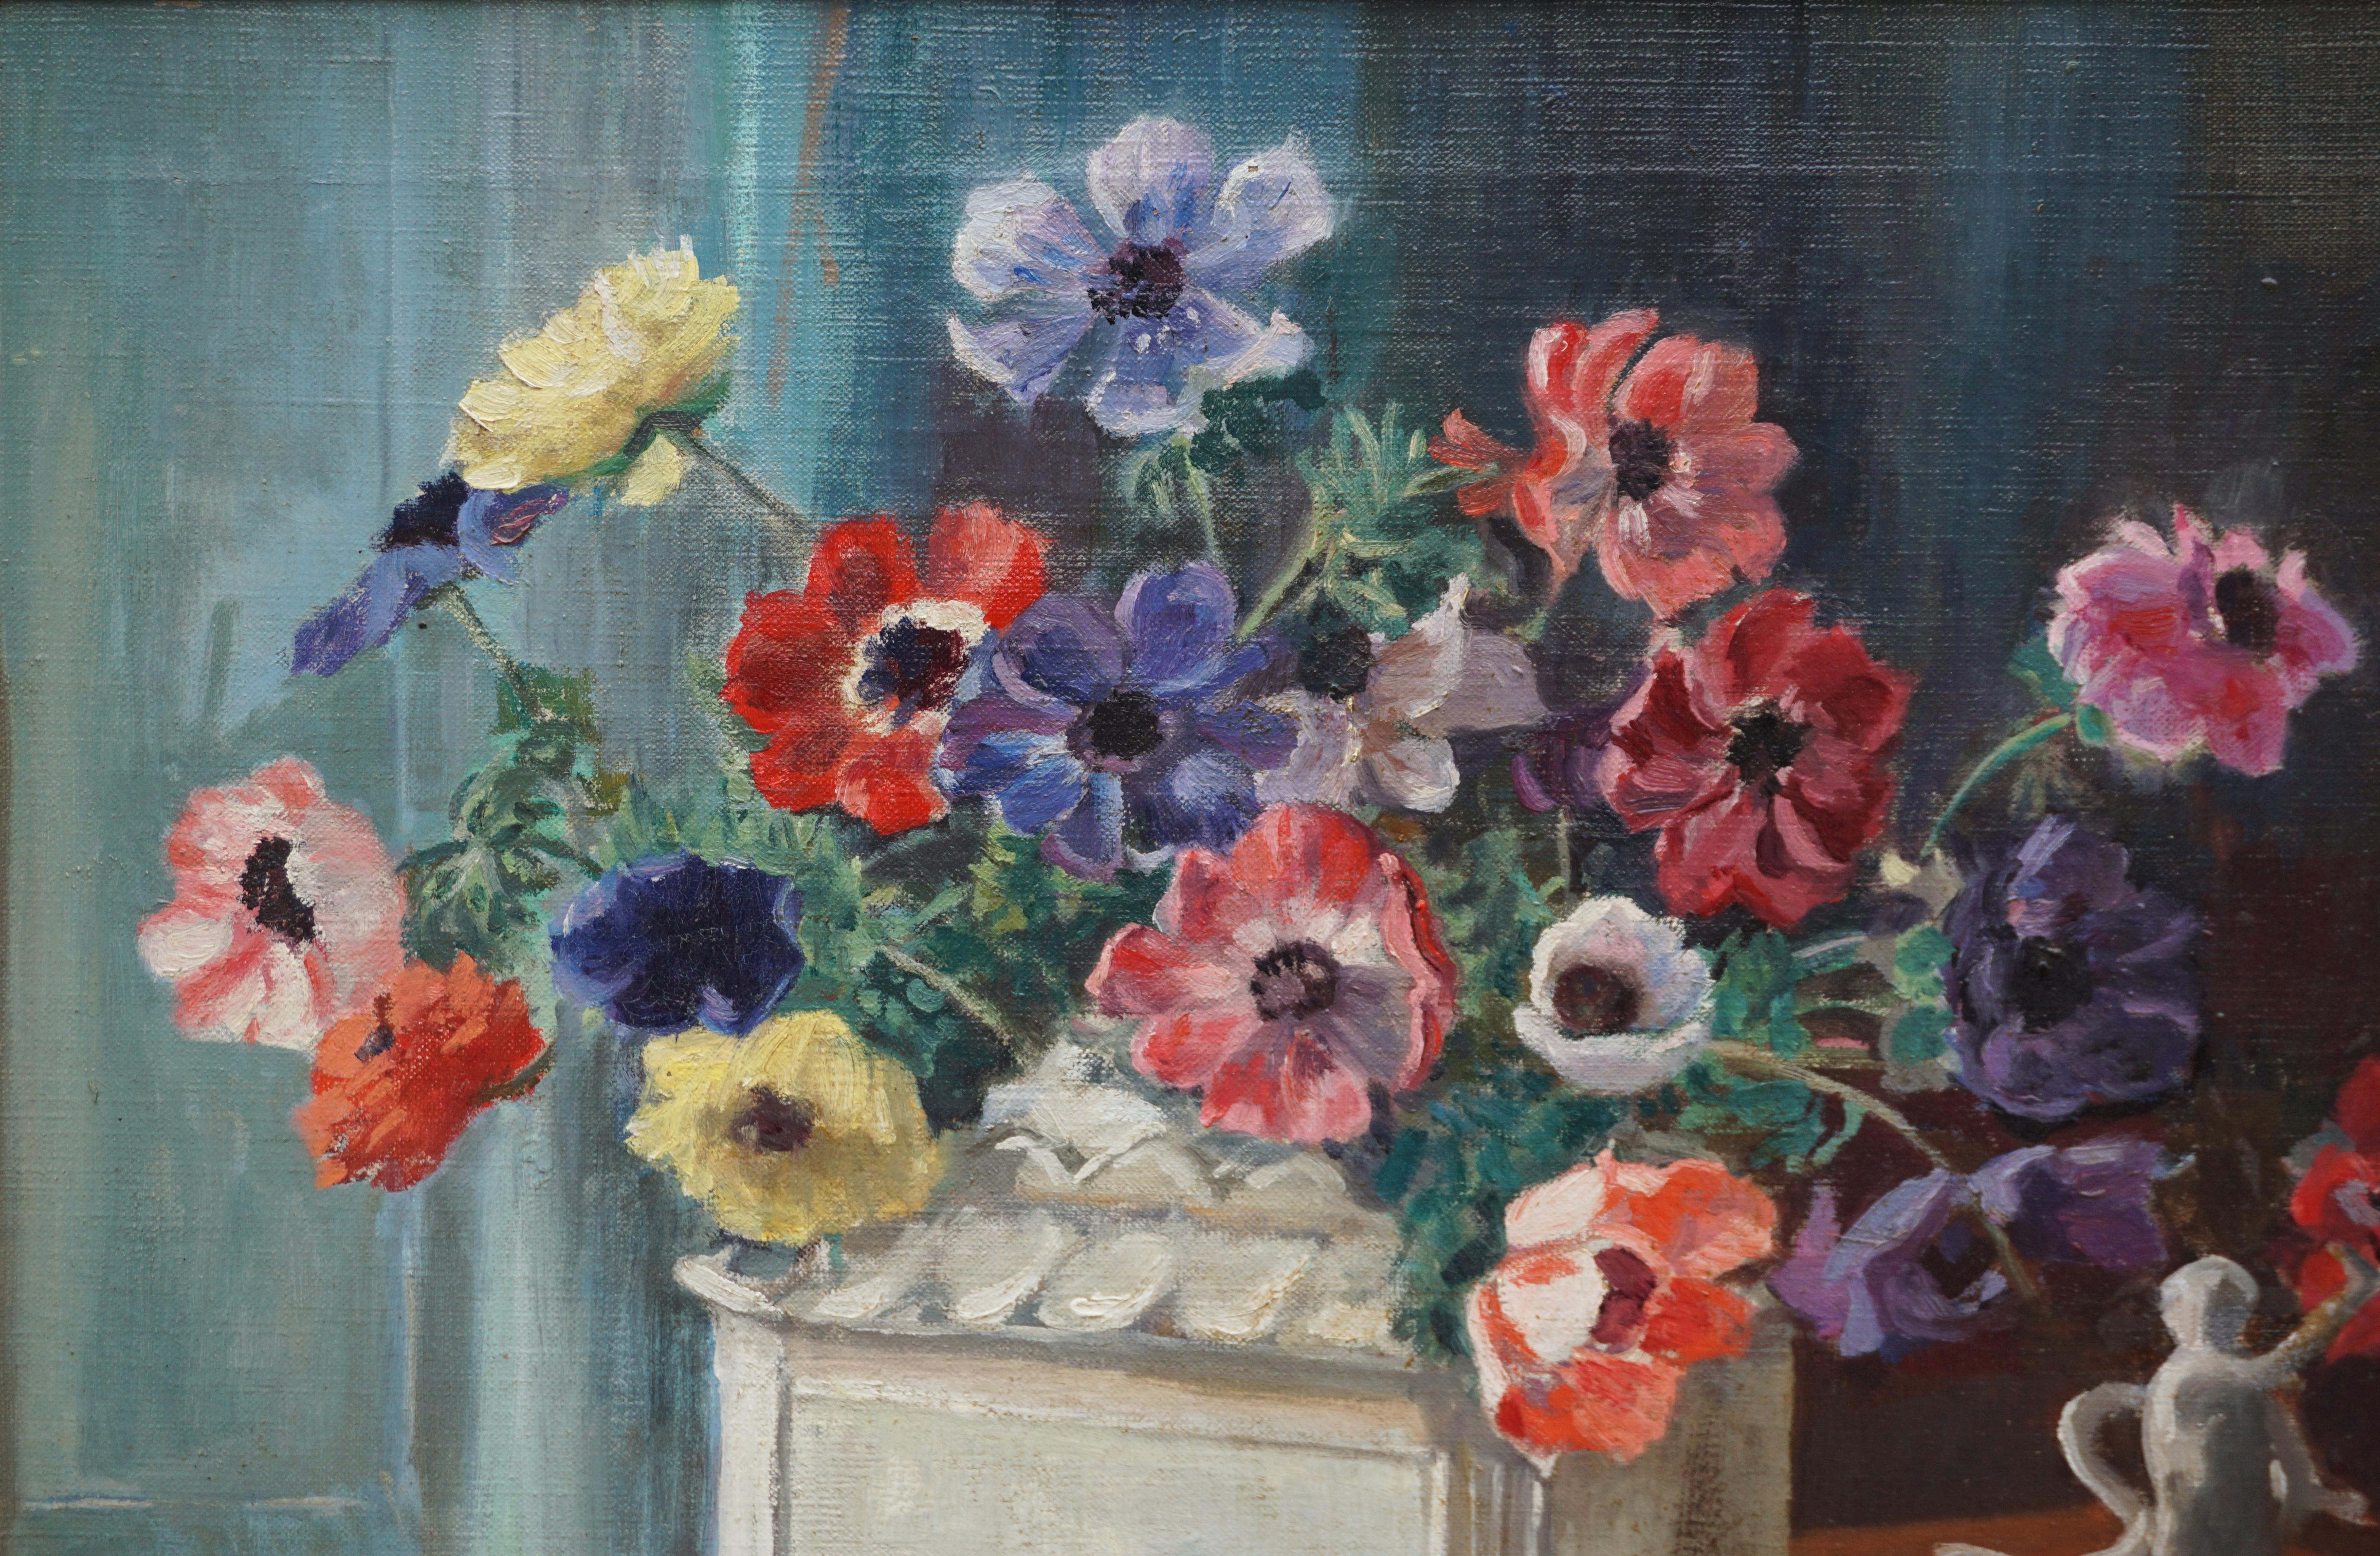 Blumenstillleben aus den 1940er Jahren – Anemones & Porzellanstatue (Amerikanischer Impressionismus), Painting, von Marguerite Stuber Pearson